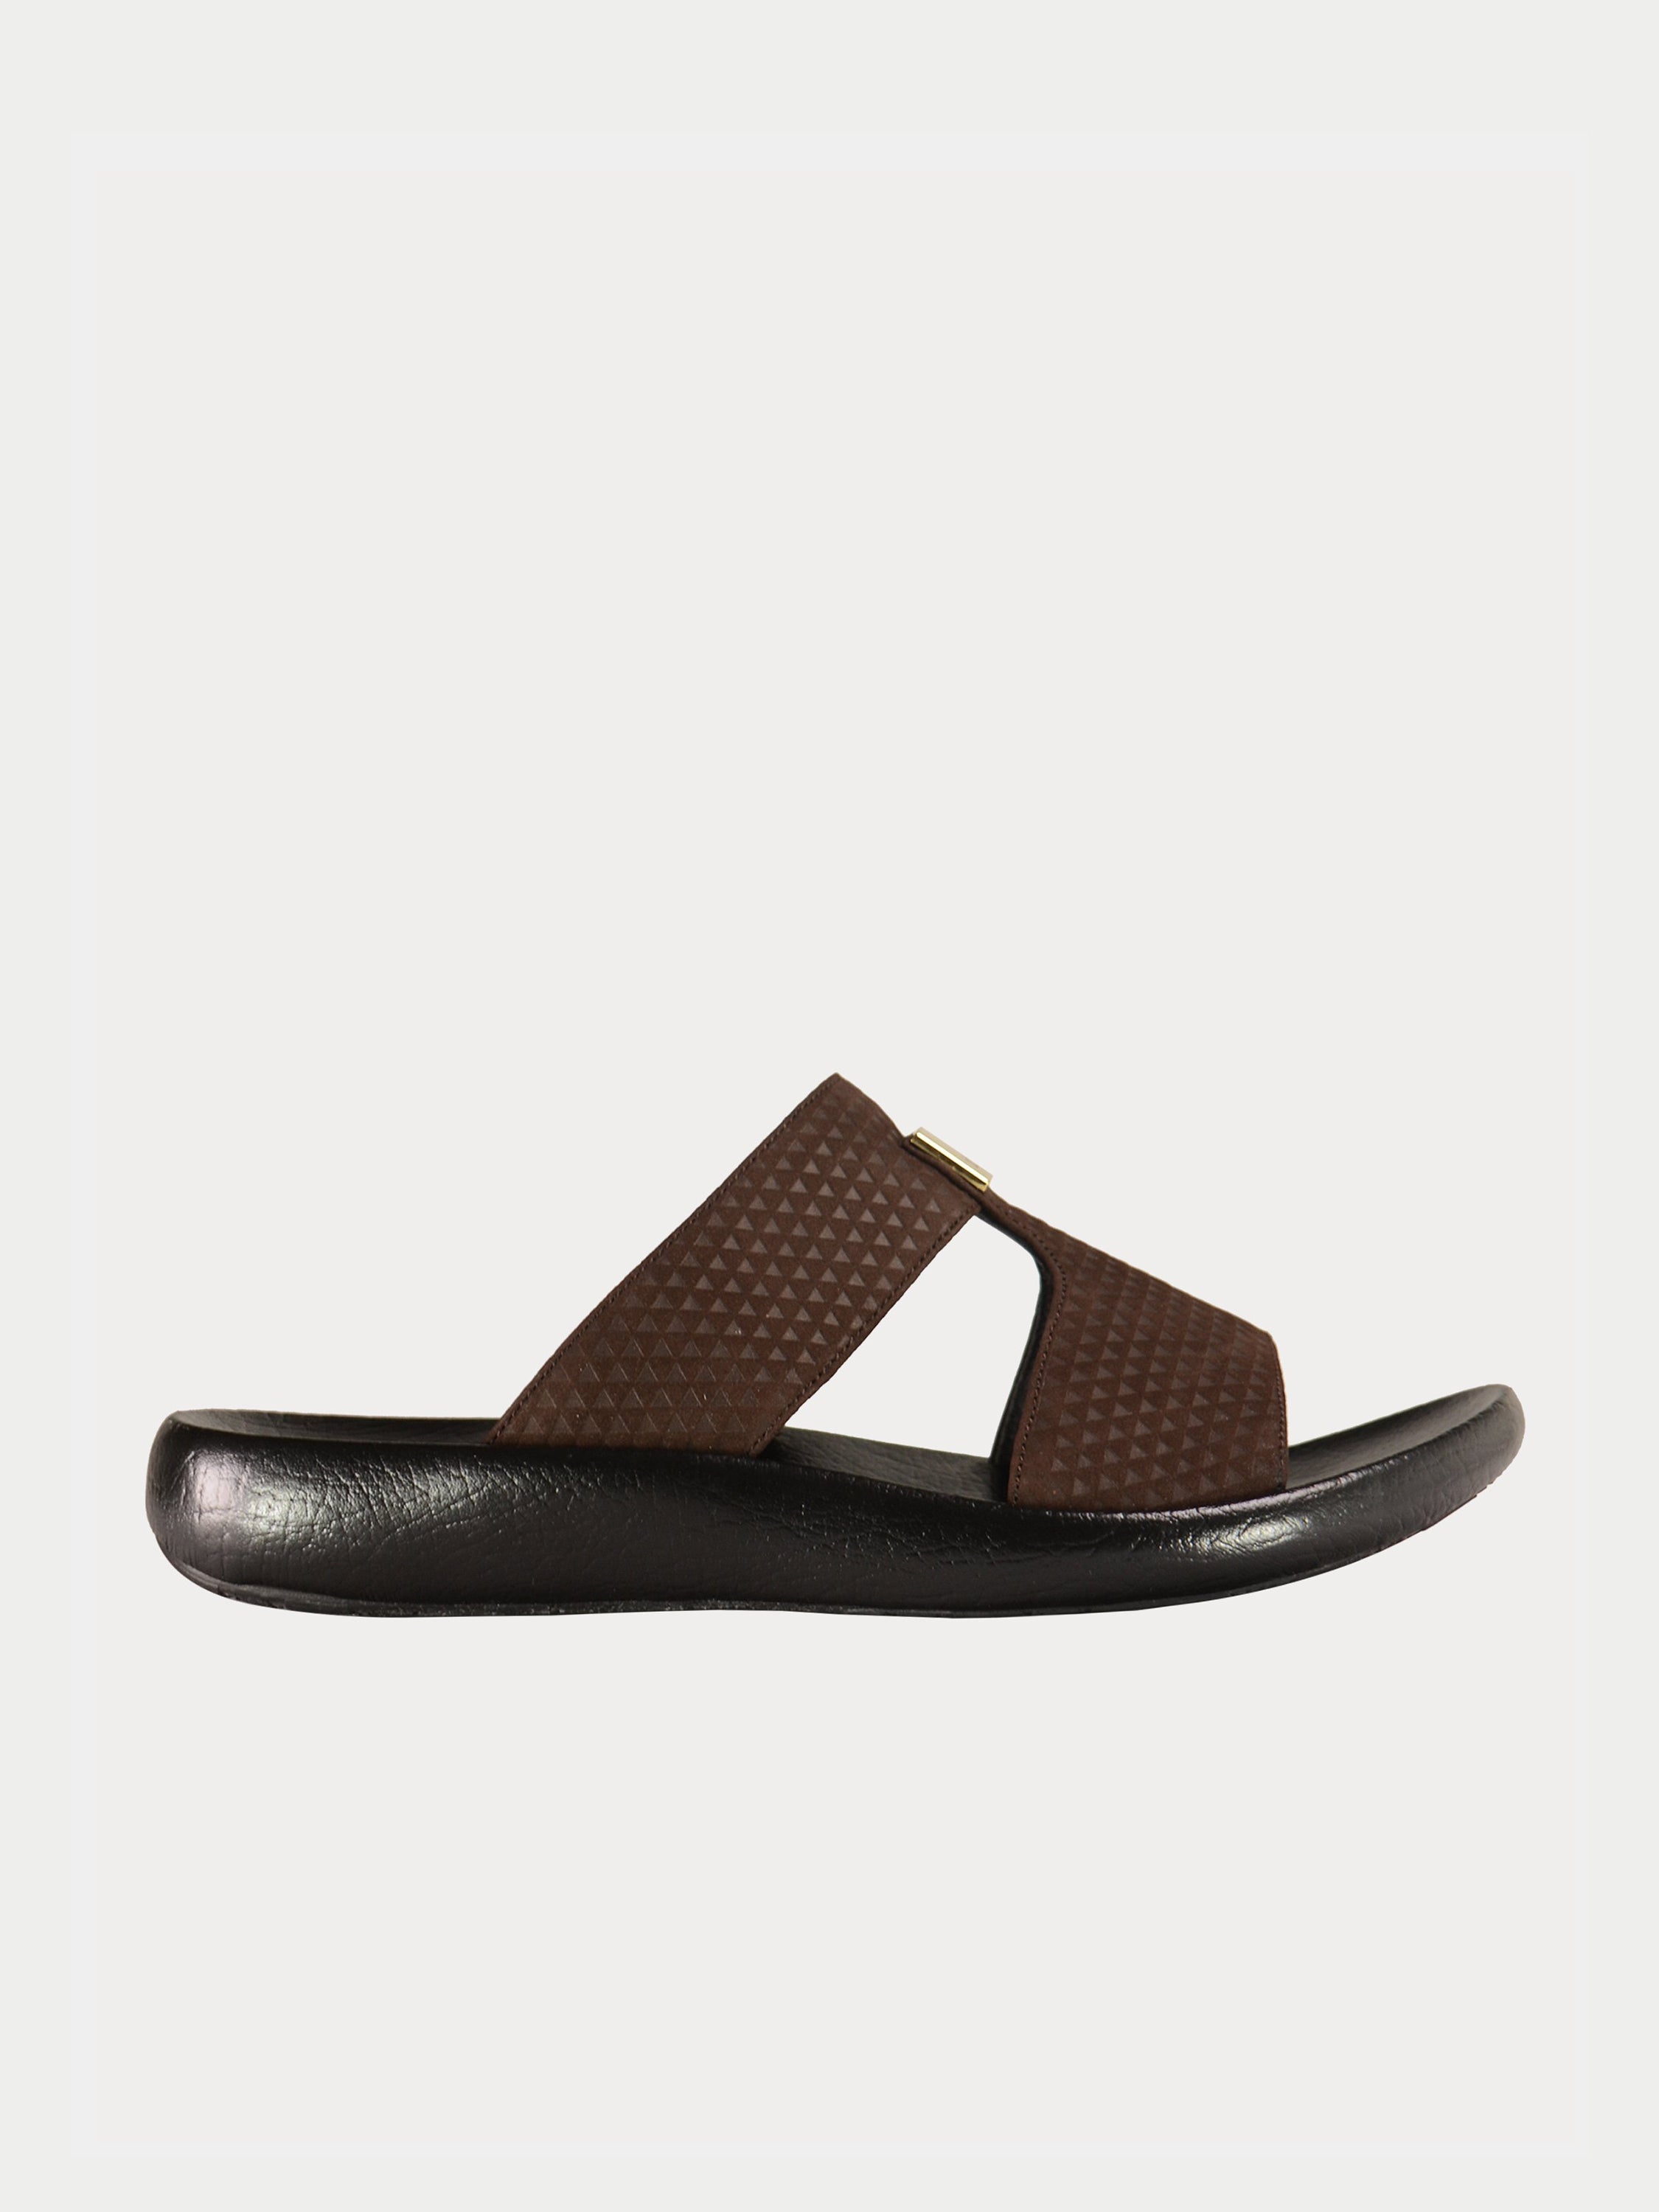 Barjeel Uno 0190520 Textured Suede Arabic Sandals #color_Brown